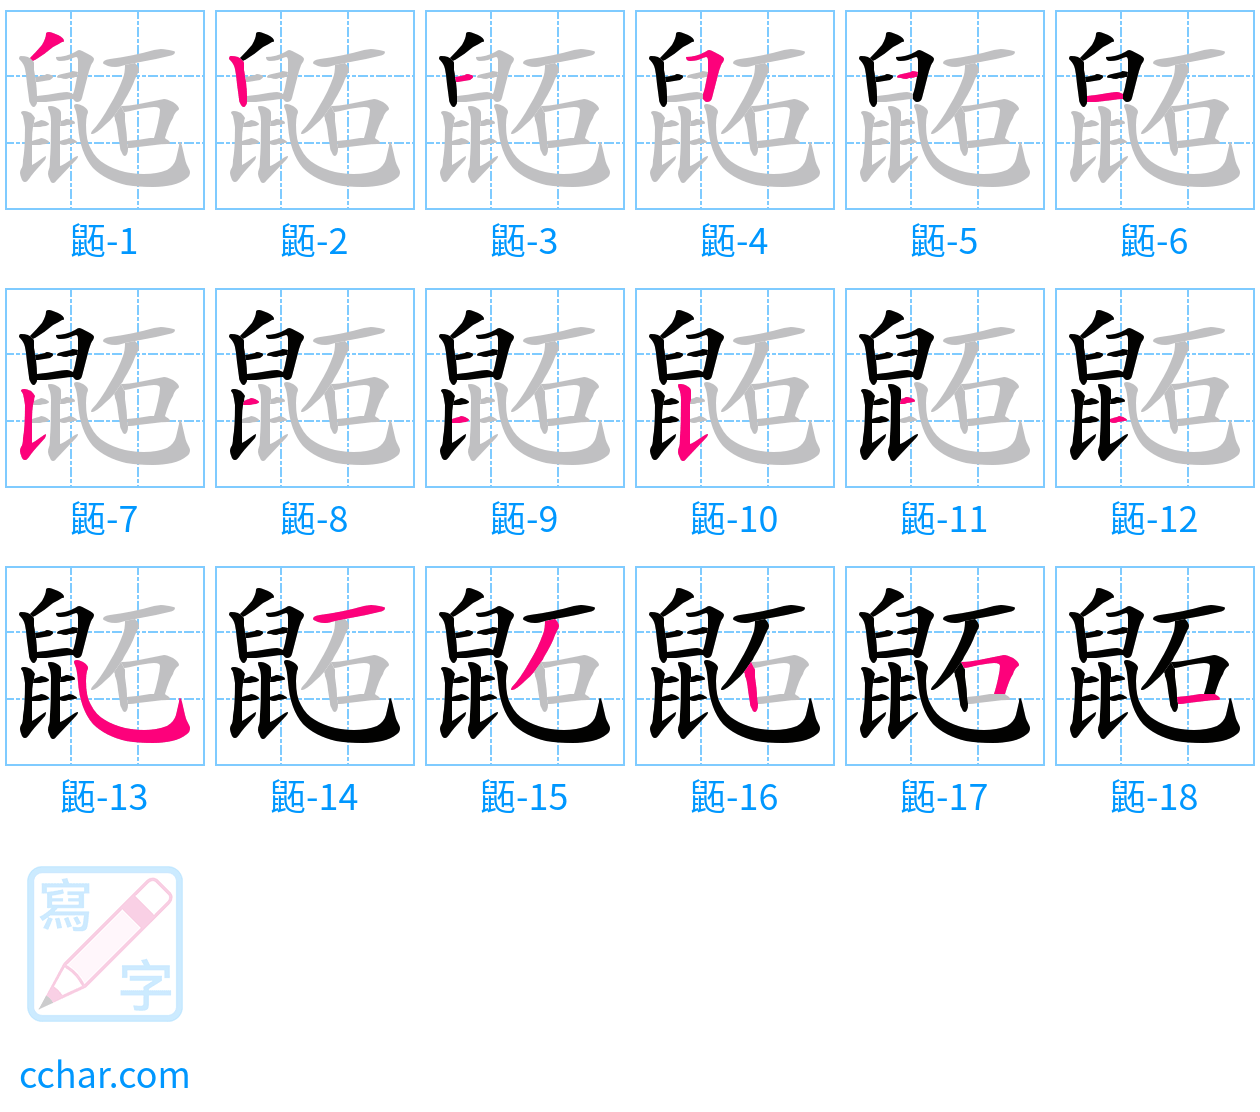 鼫 stroke order step-by-step diagram